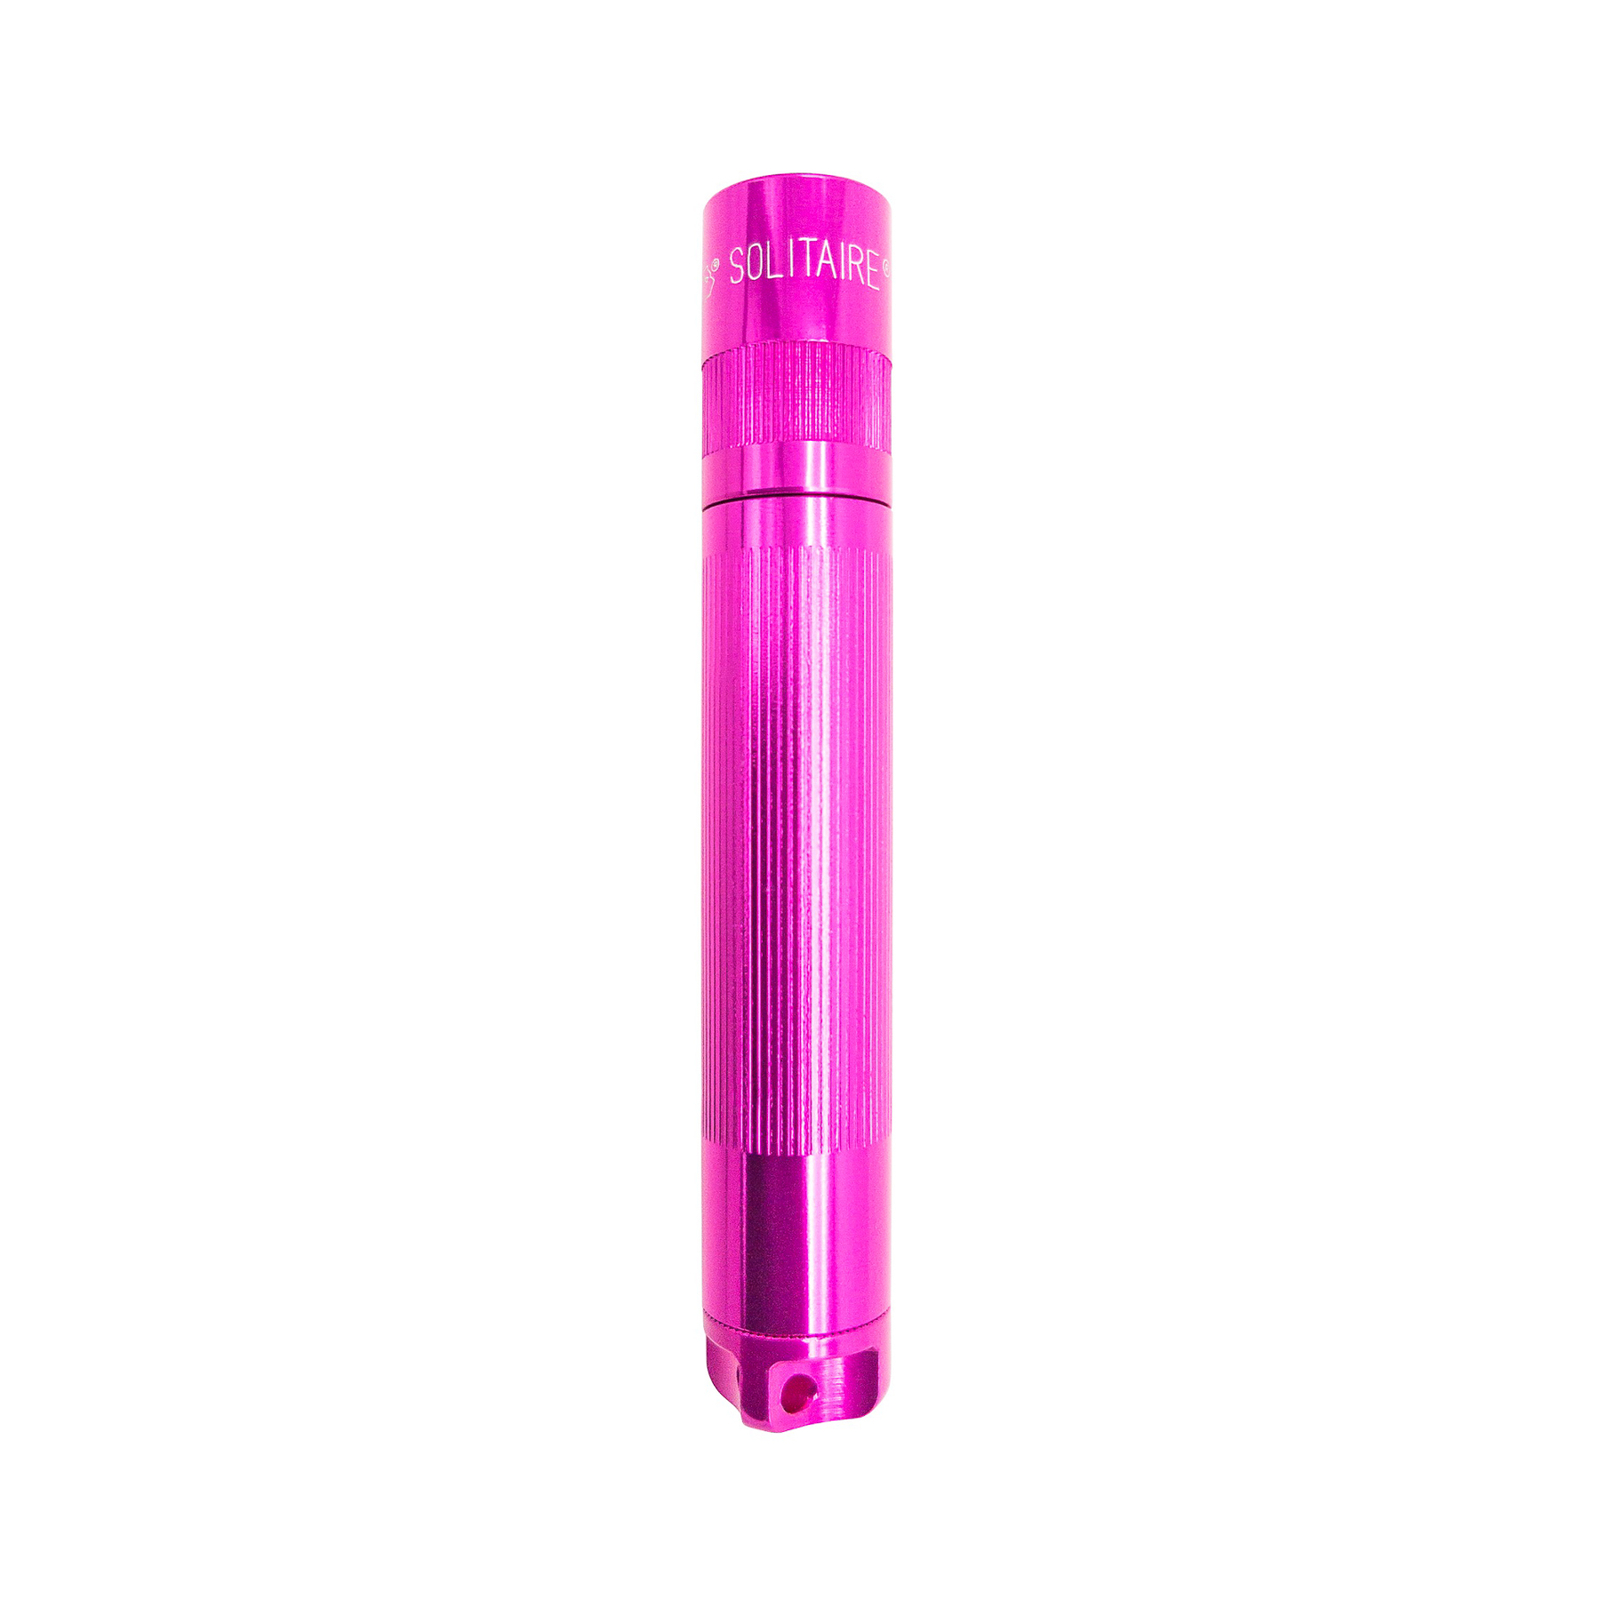 Svítilna Maglite LED Solitaire, 1 článek AAA, krabička, růžová